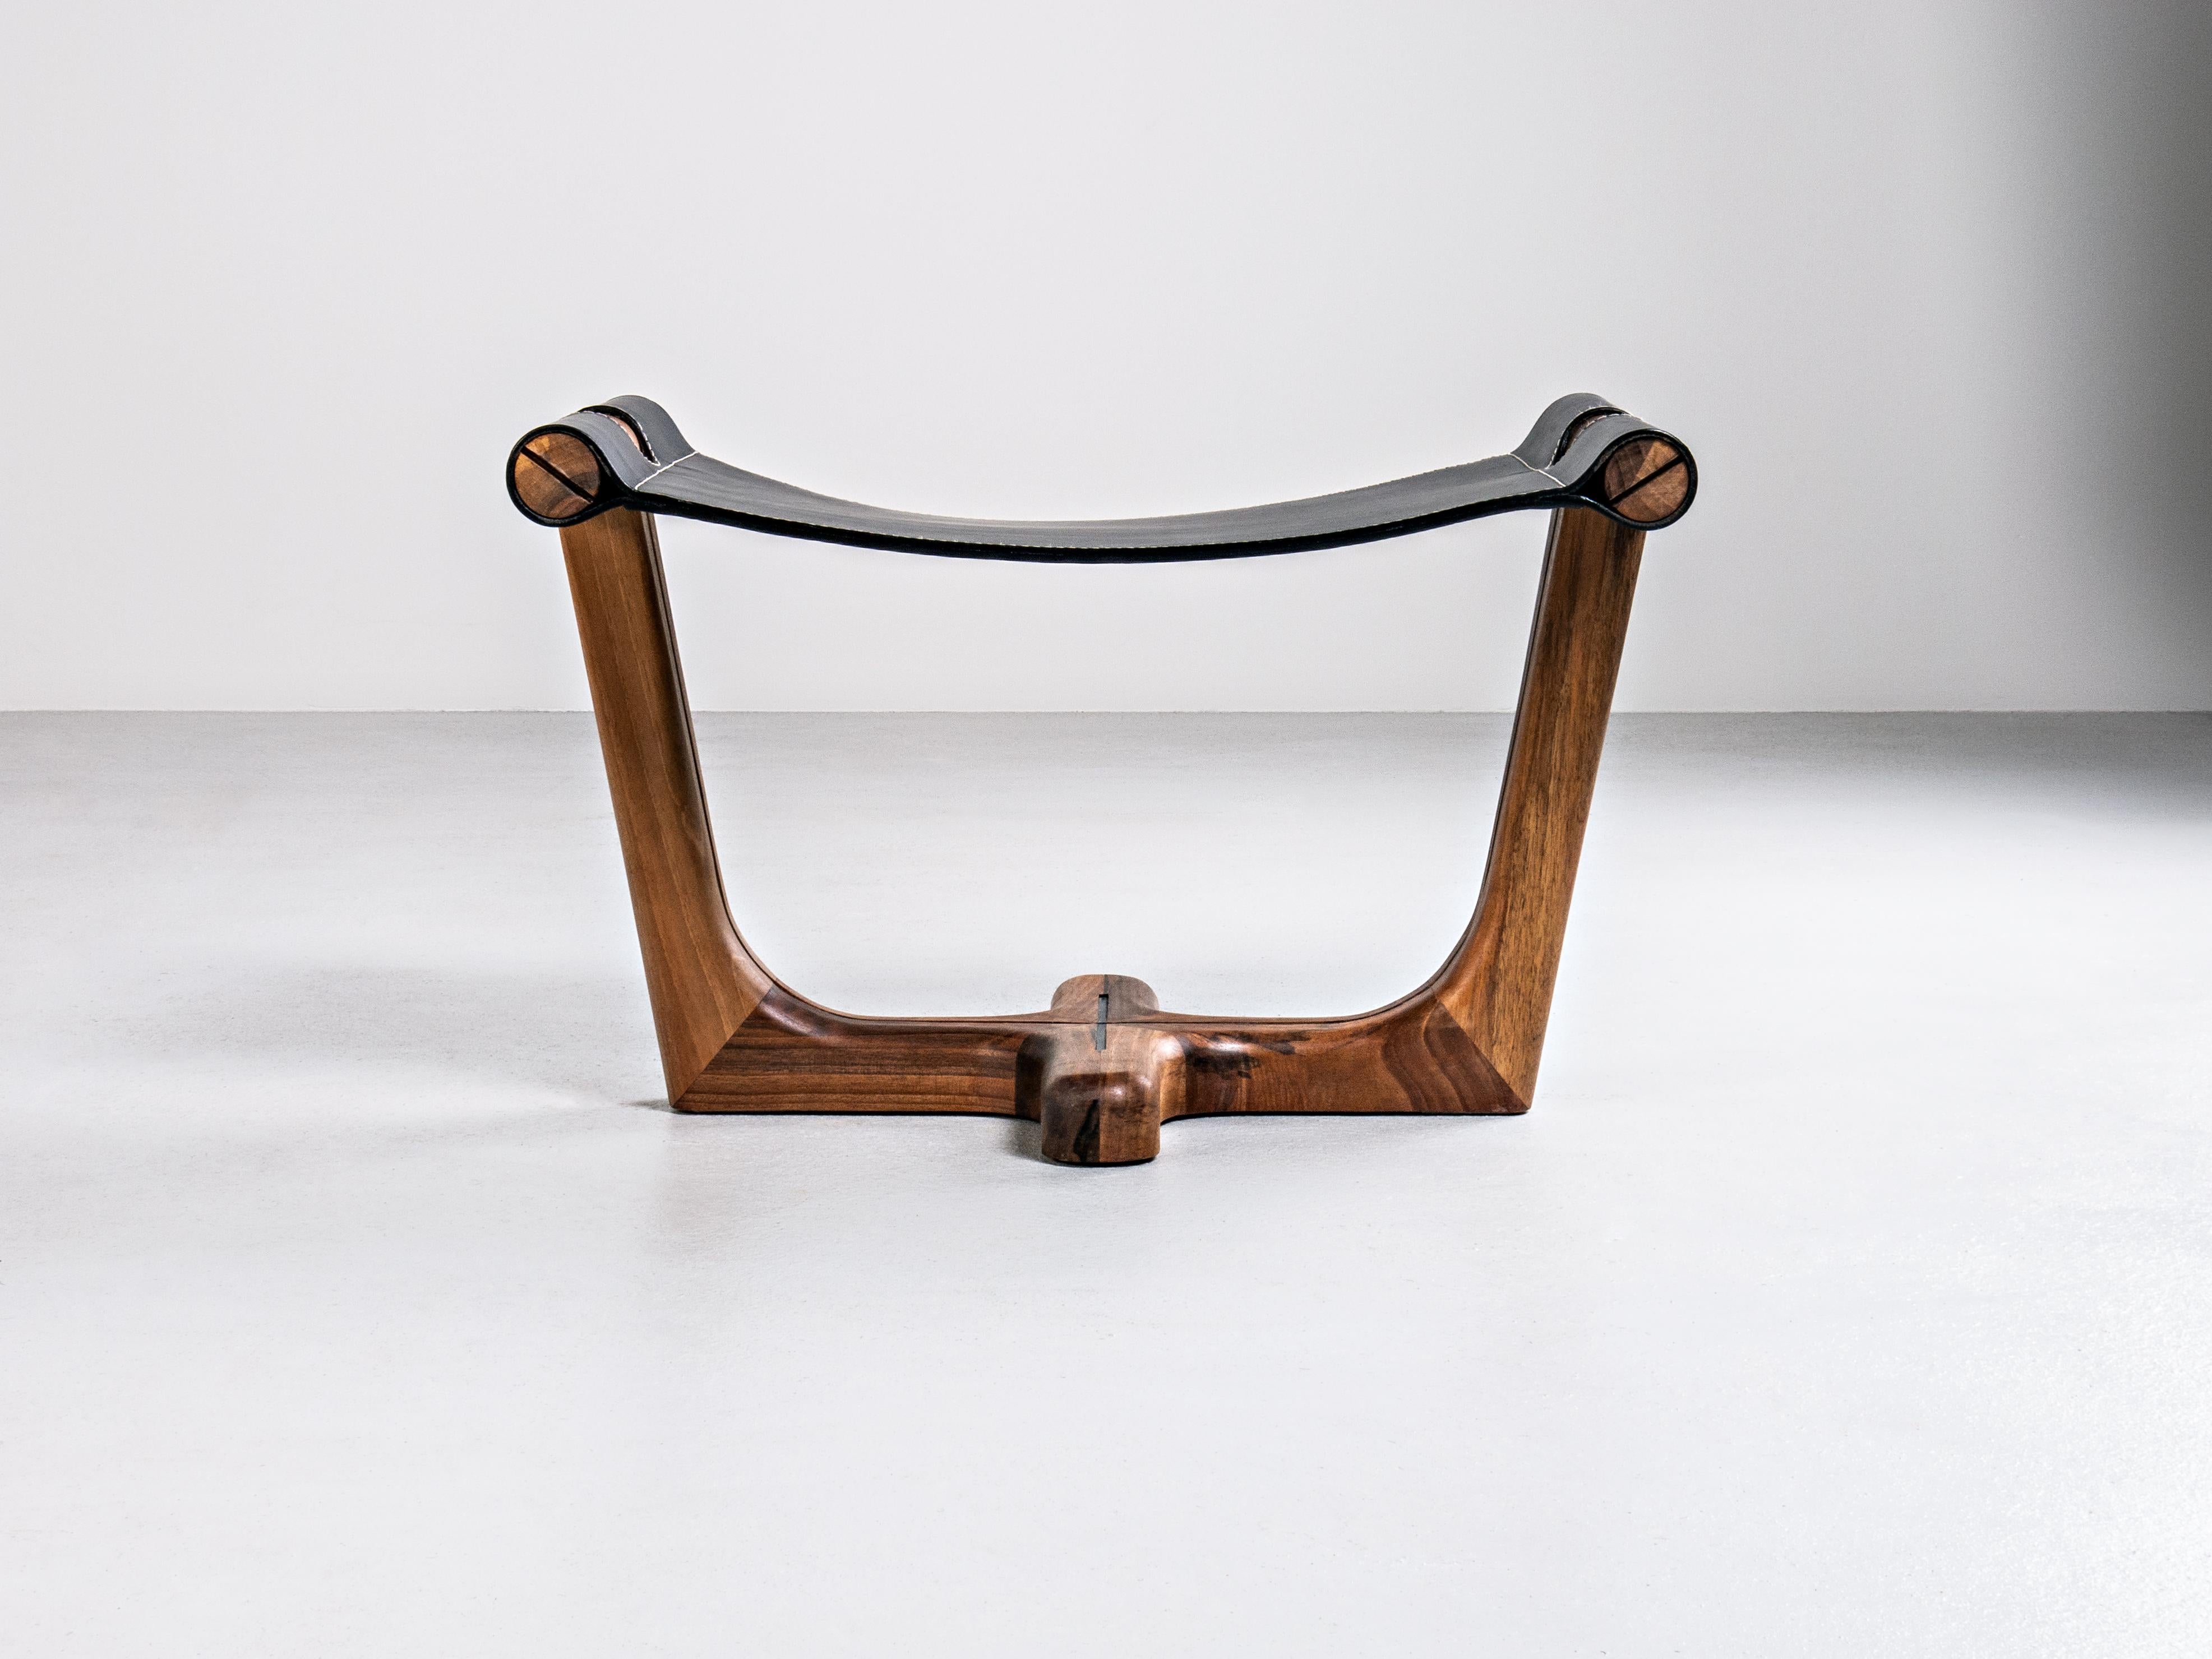 Le tabouret repose-pieds /tabure Armada se définit par son design énergique et sa légèreté exceptionnelle, obtenus par la combinaison des matériaux les plus nobles, donnant aux meubles de cette collection l'aspect de sculptures. Avec ses éléments